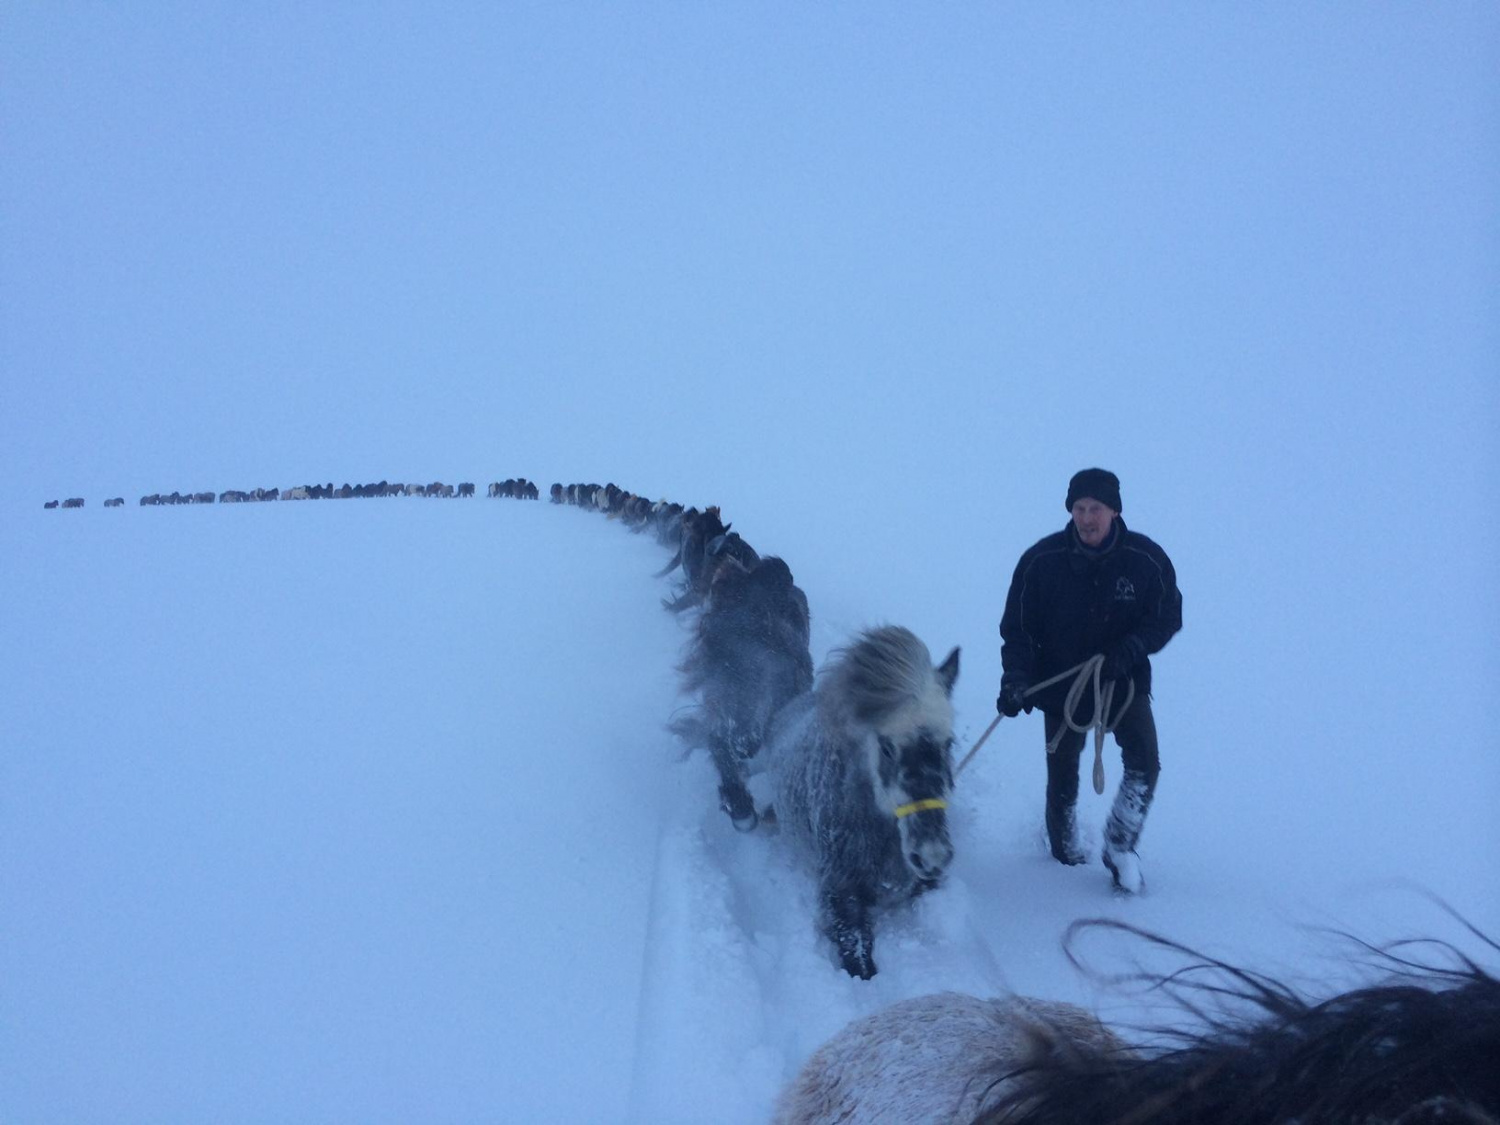 Rescuing horses in Akureyri, Iceland, 2015